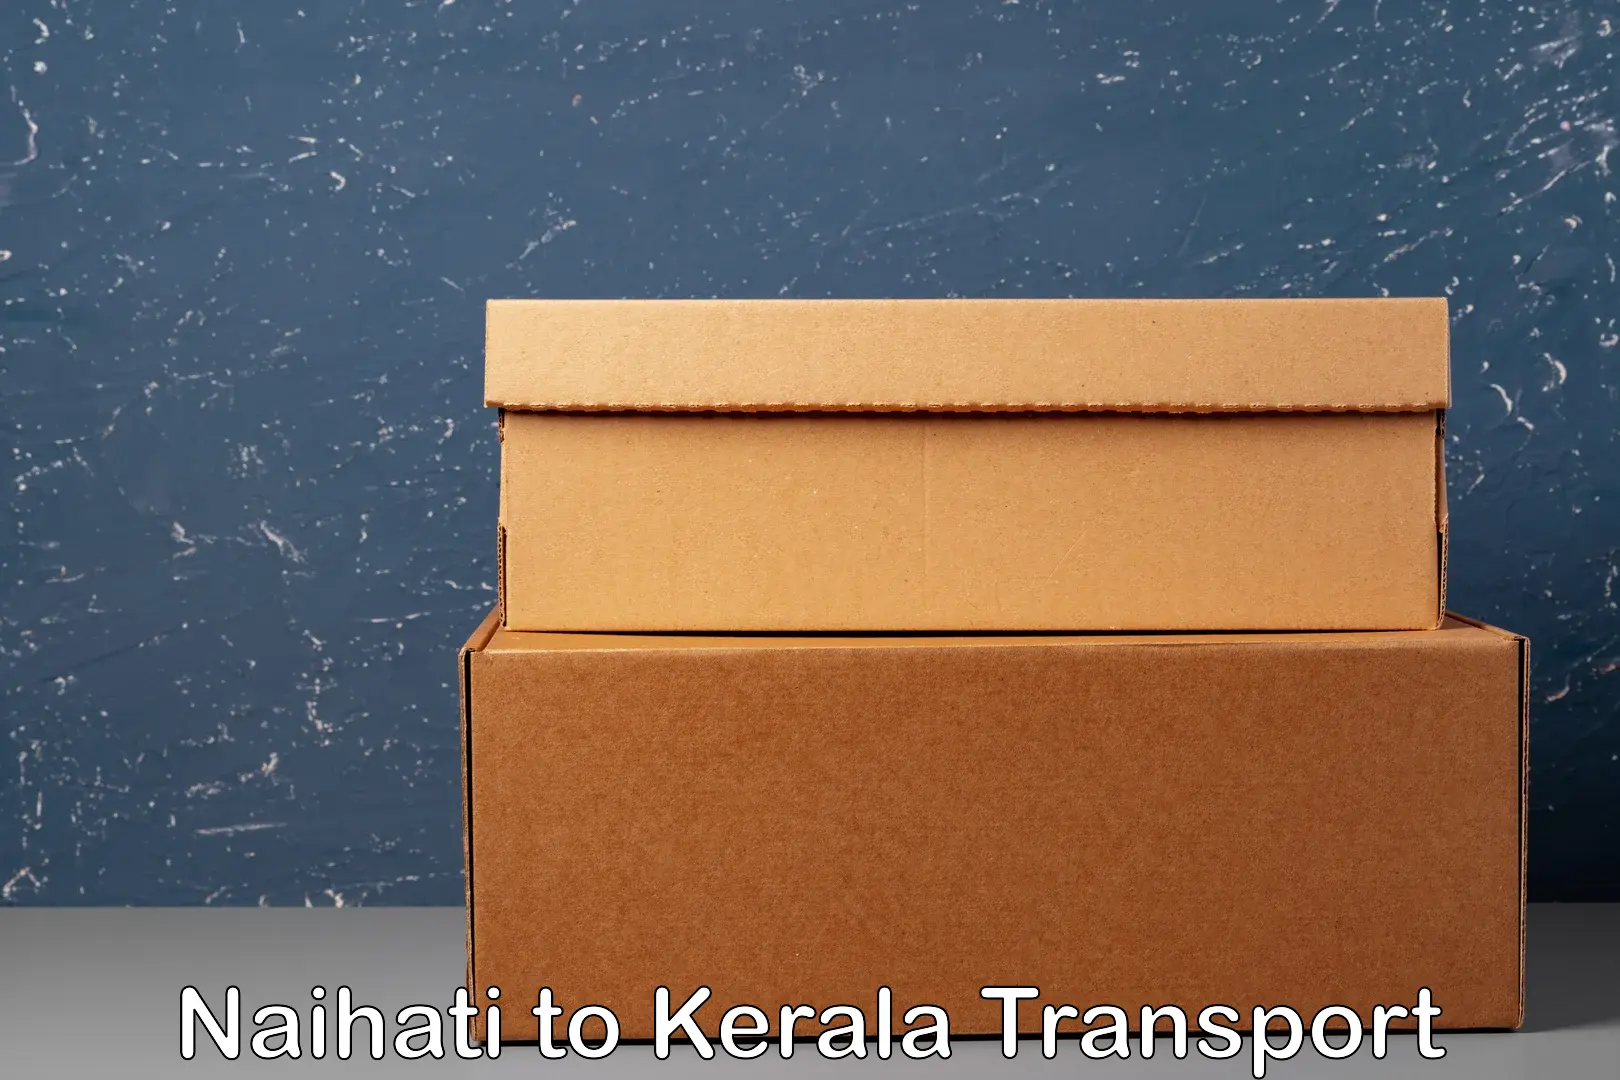 Shipping partner Naihati to Kerala